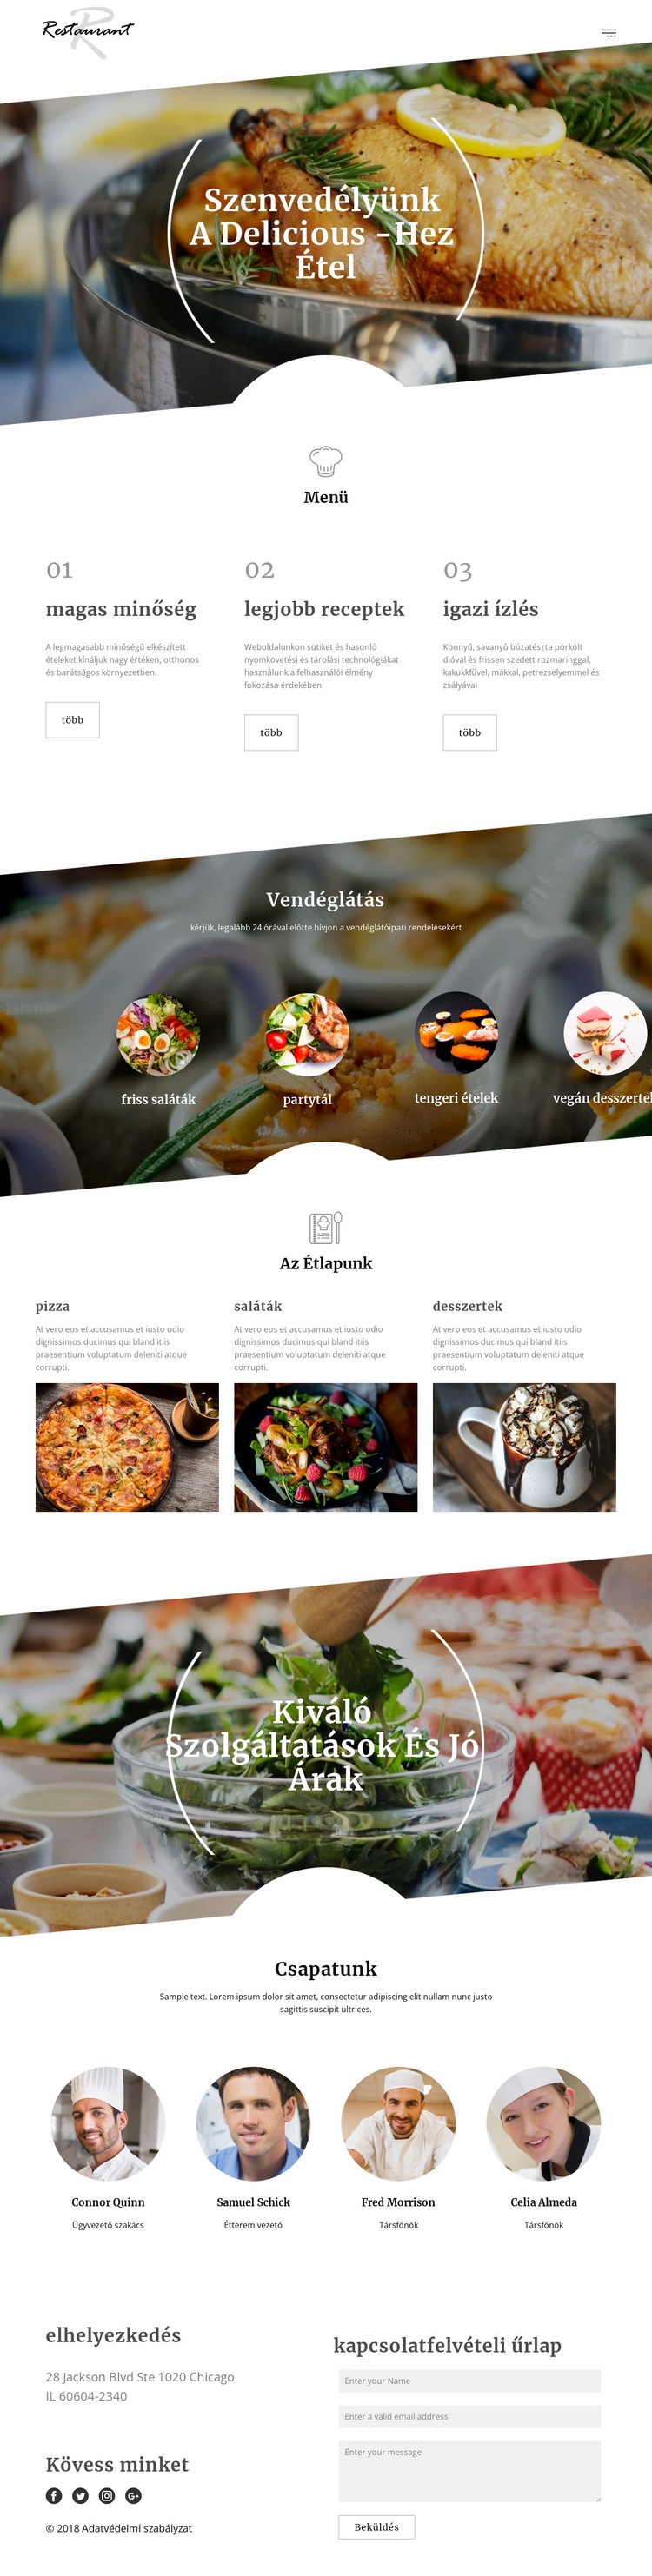 Executive szakács receptek Weboldal tervezés